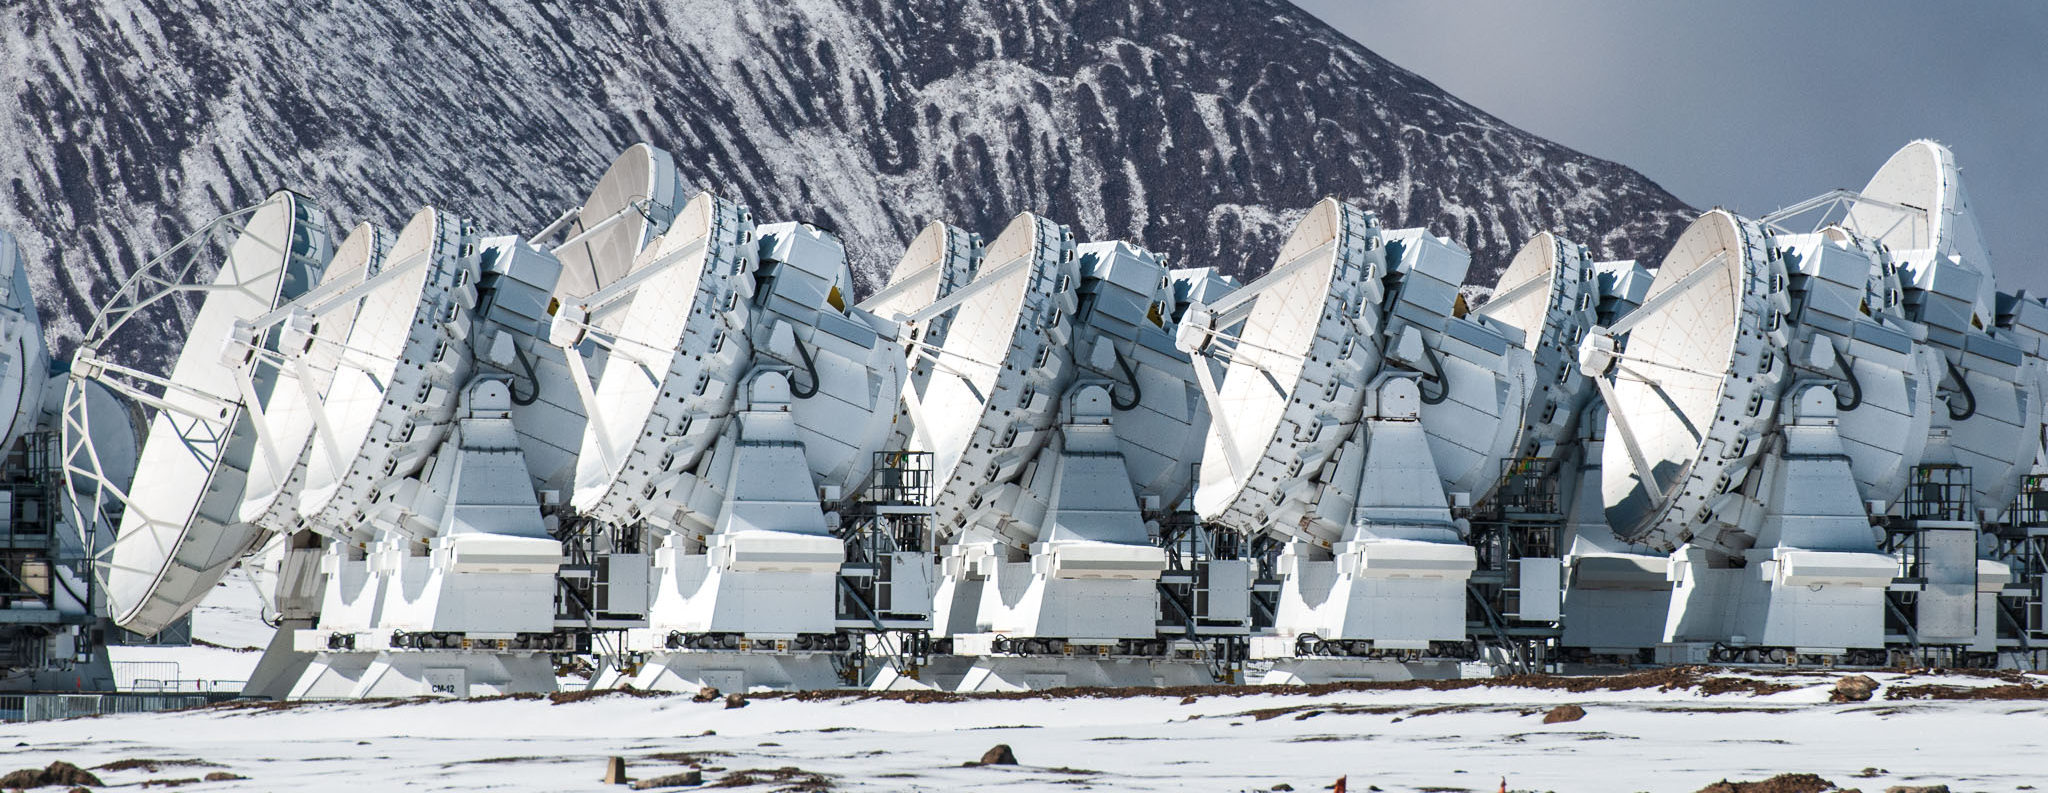 Атакамская большая антенная решётка миллиметрового диапазона (Atacama Large Millimeter Array, ALMA)